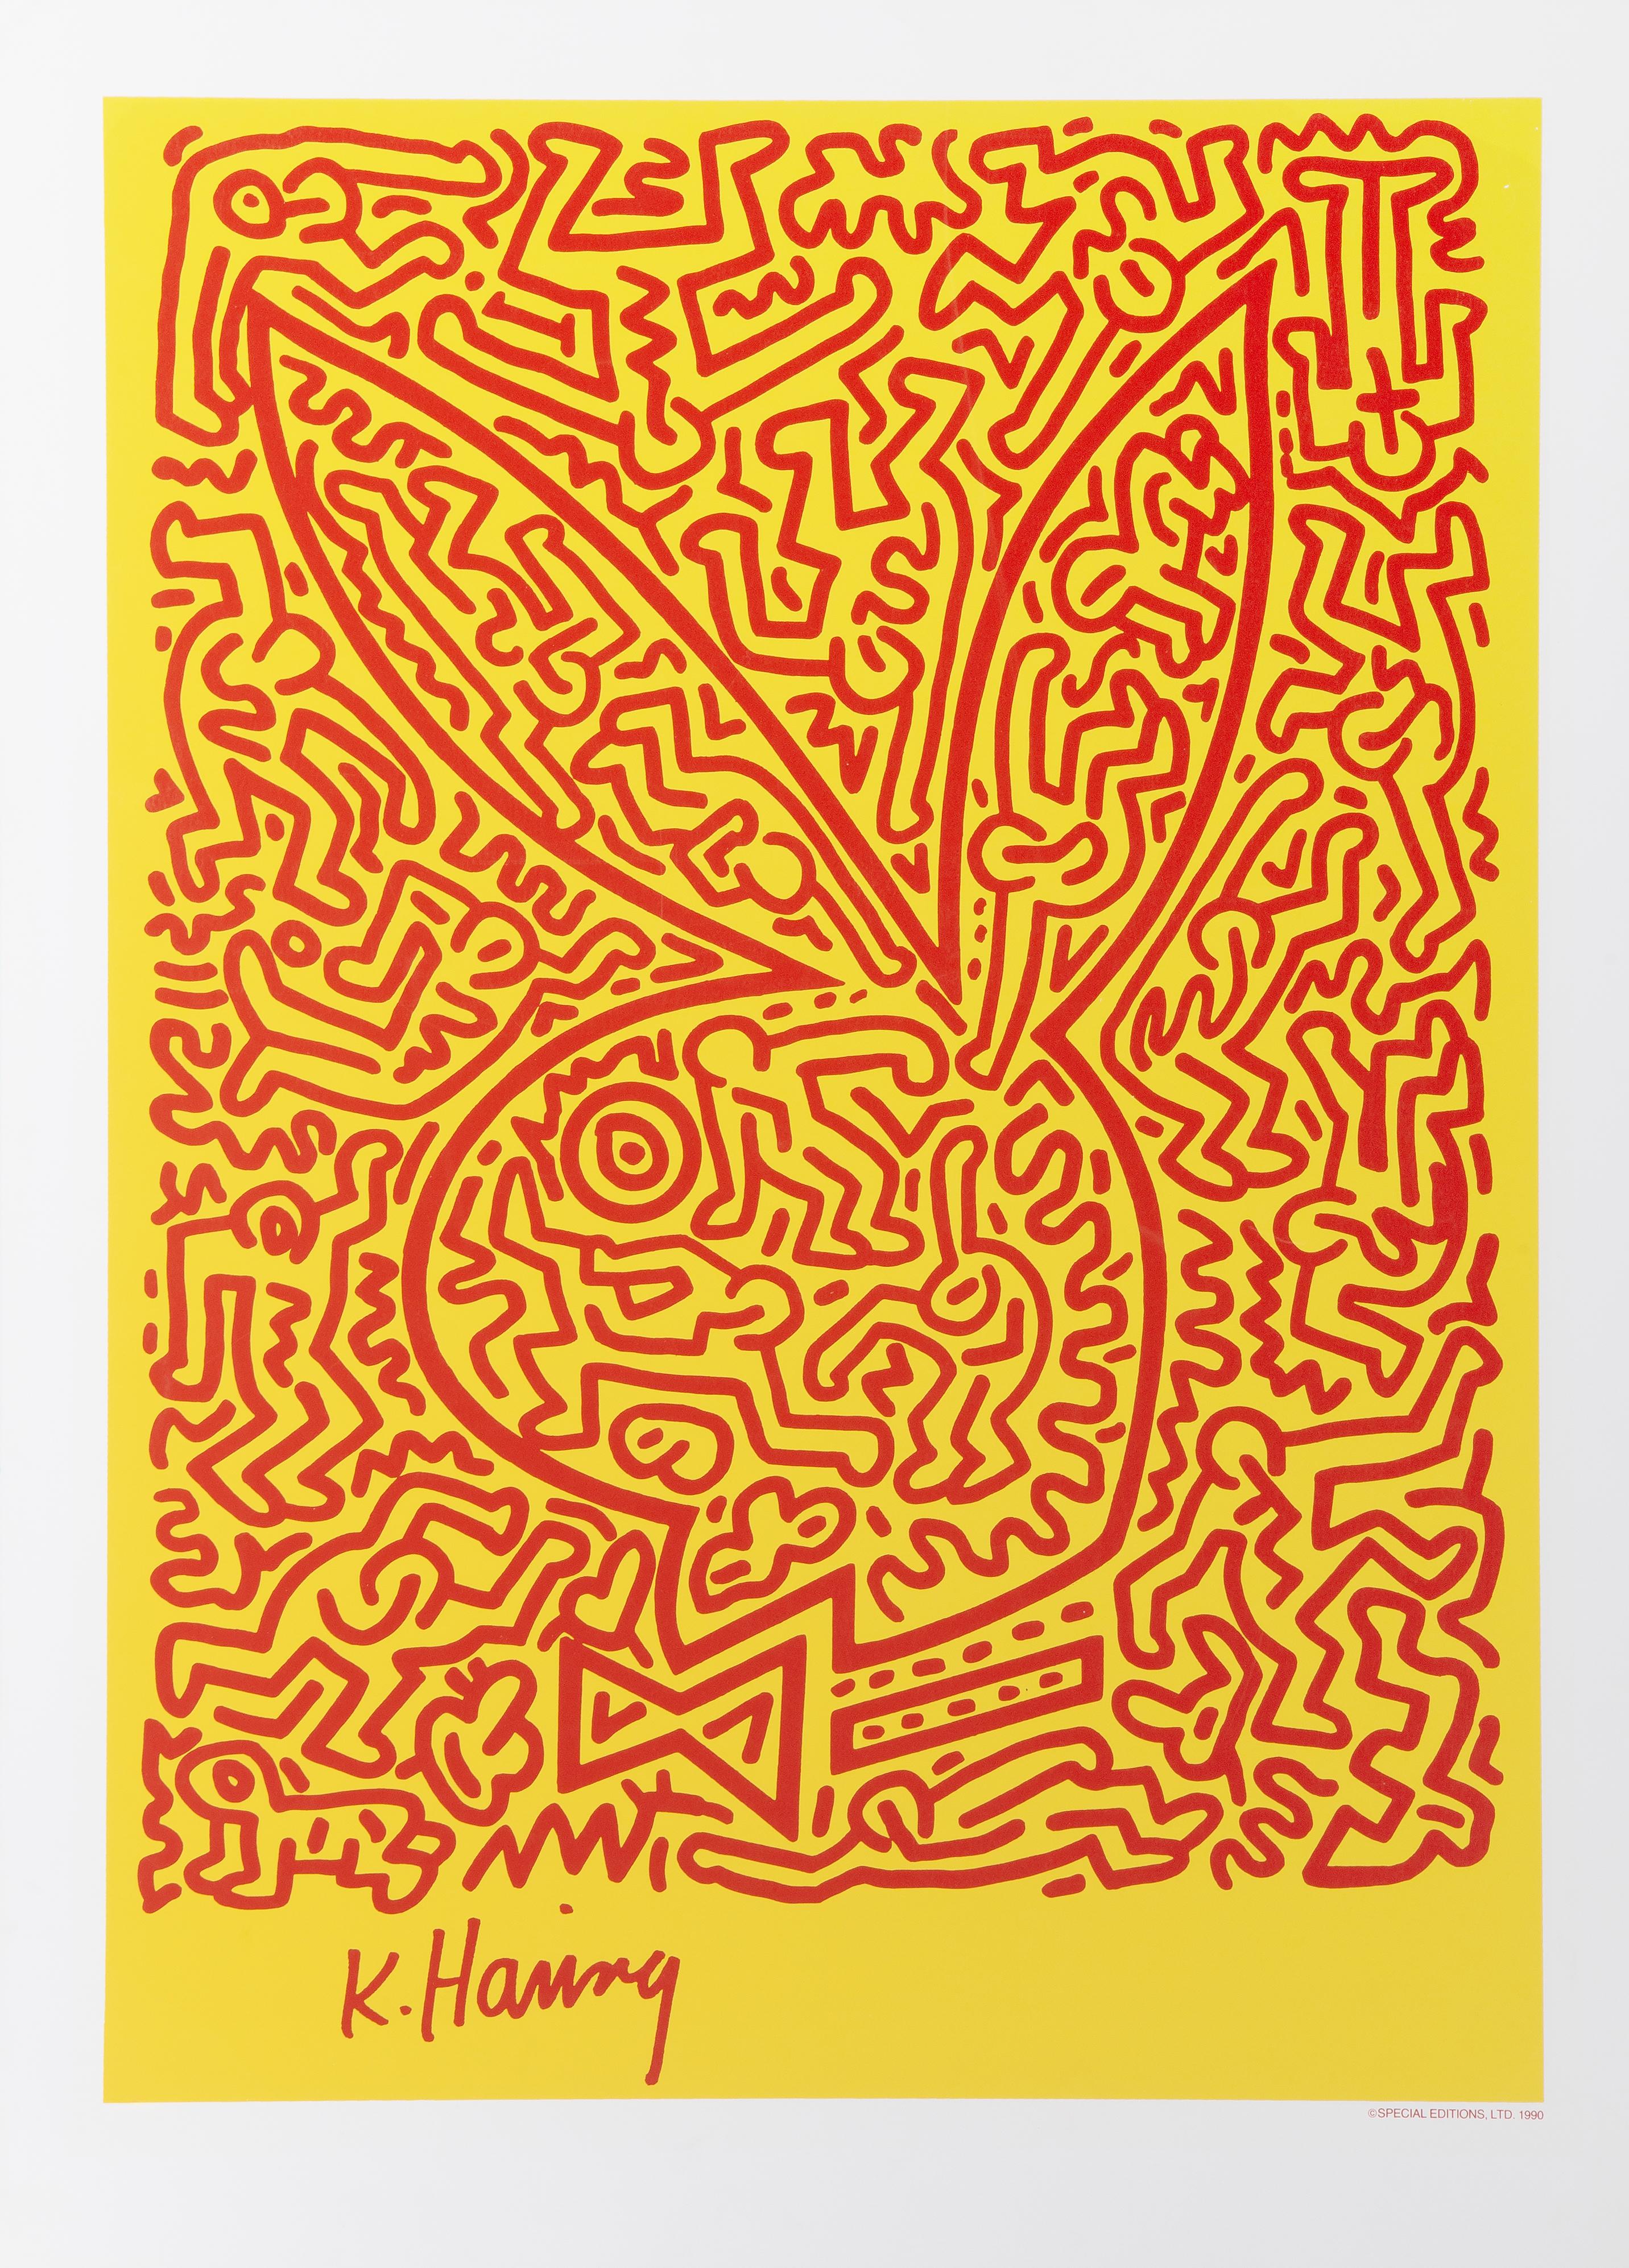 Affiche sérigraphiée en édition limitée que Keith Haring a conçue pour Playboy. Cette édition limitée à 1000 exemplaires a été publiée en 1990 par Special Editions Ltd. La signature et la date " K. Haring" figurent dans l'impression. Le format de la